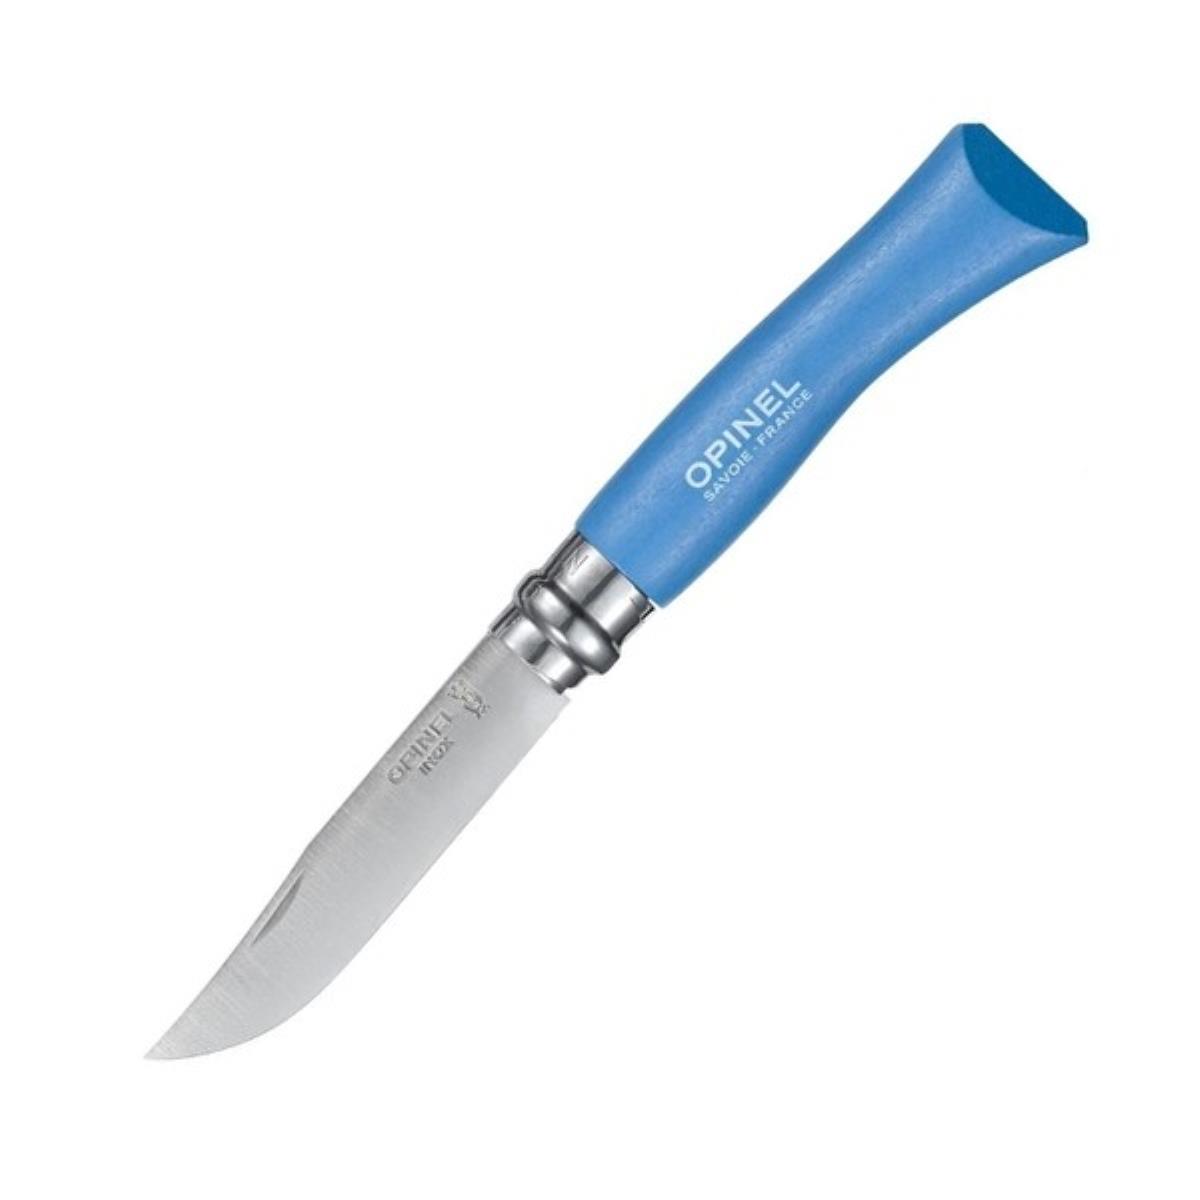 Нож №7 VRI Colored Tradition Sky blue нерж. сталь, рукоять граб, длина клинка8см (голубой) OPINEL нож разделочный ирбис цм граб аир